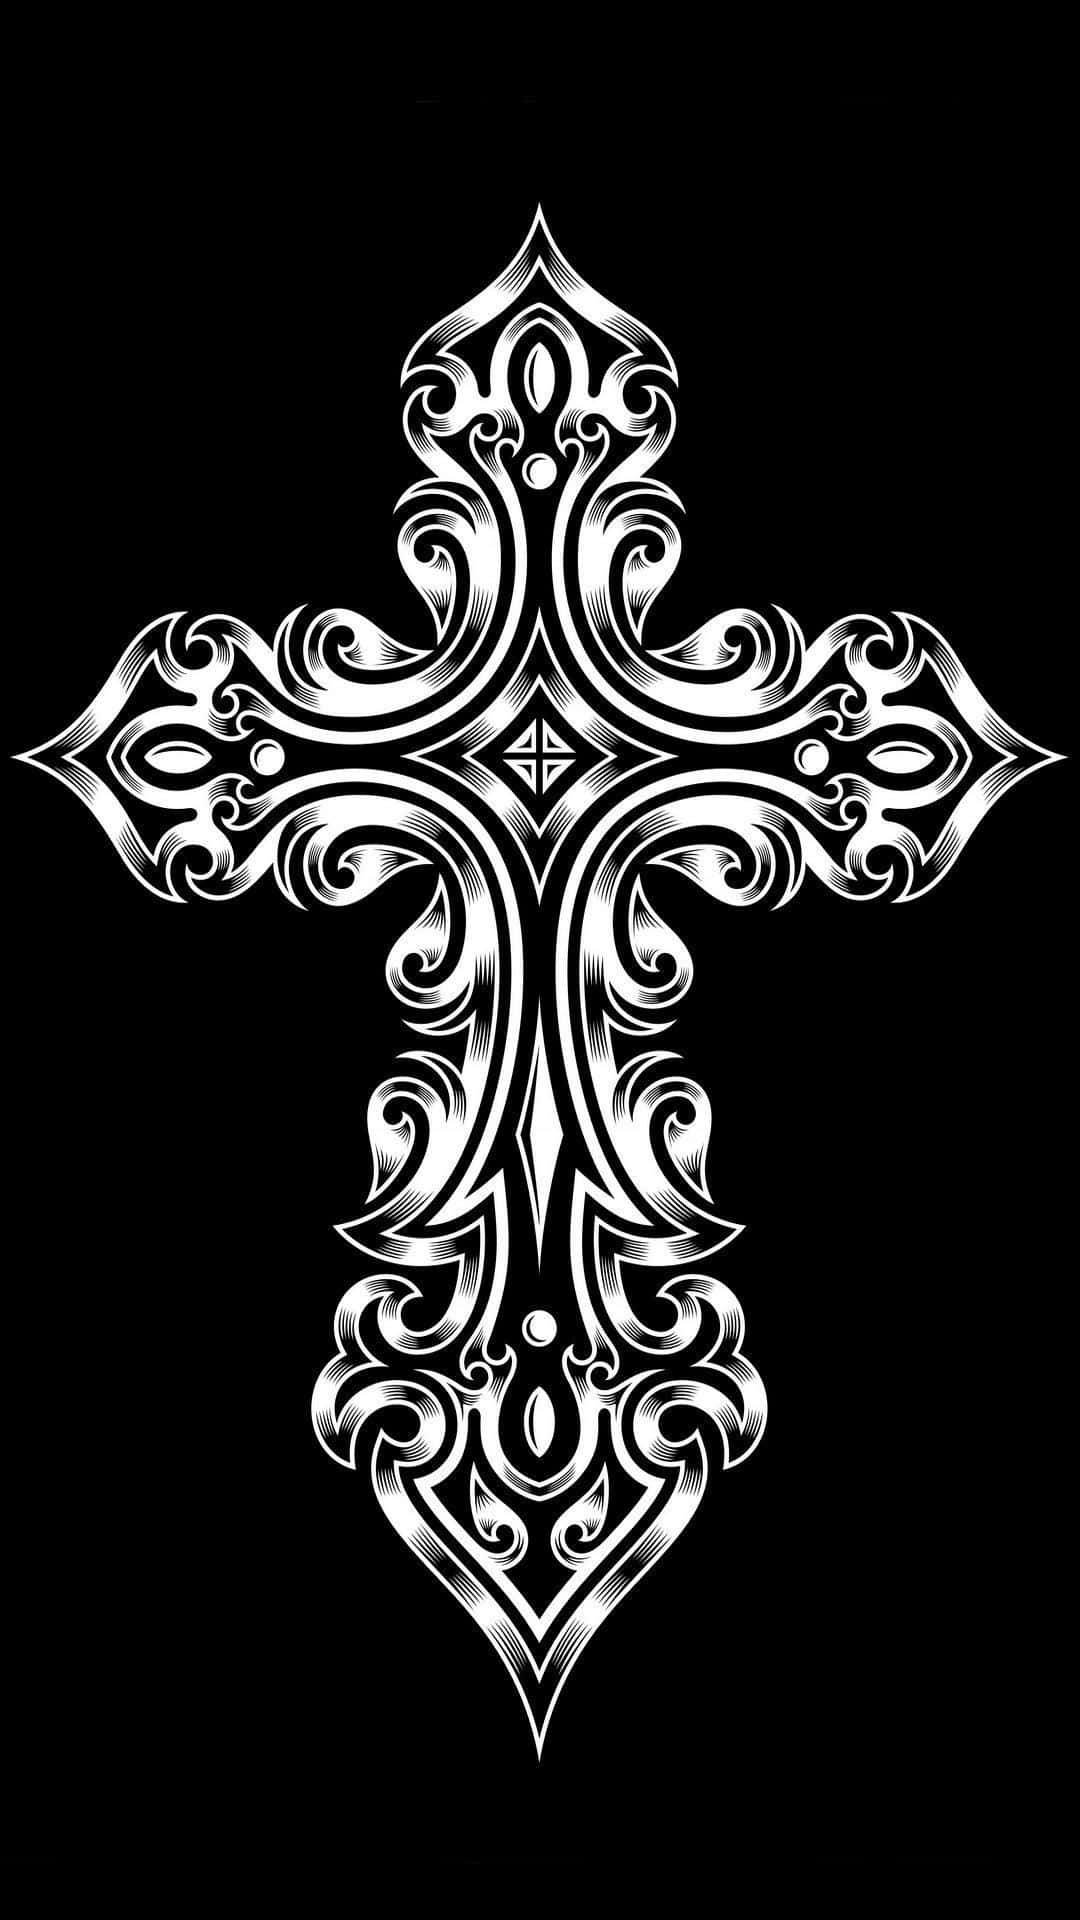 Bellissimaimmagine Con Una Croce In Bianco E Nero.